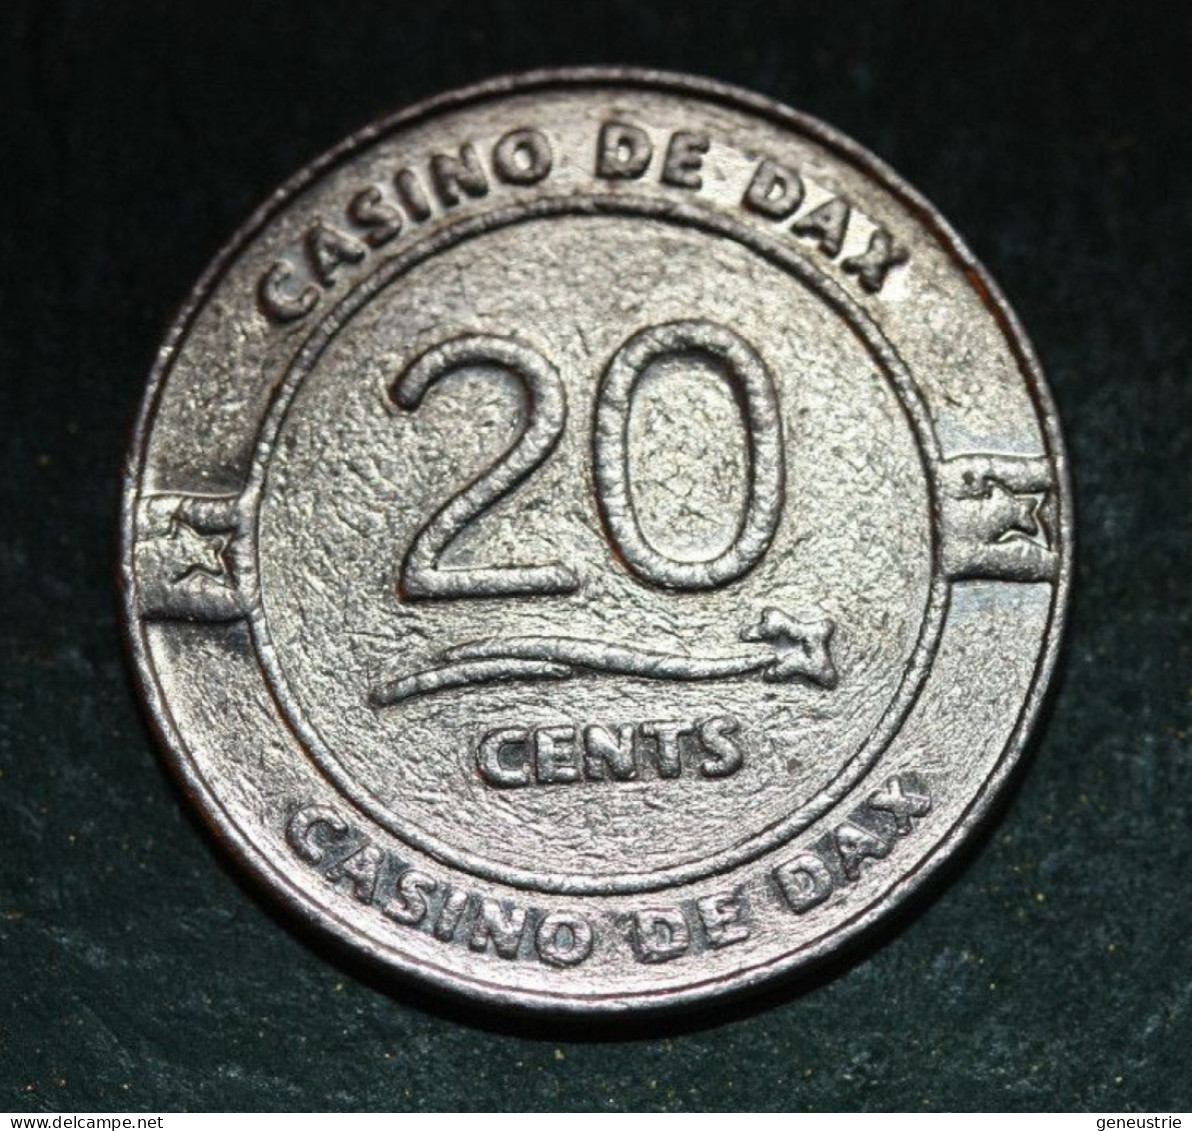 Jeton De 20 Euro Cents Du Casino De Dax - French Chips Casino Token - Casino